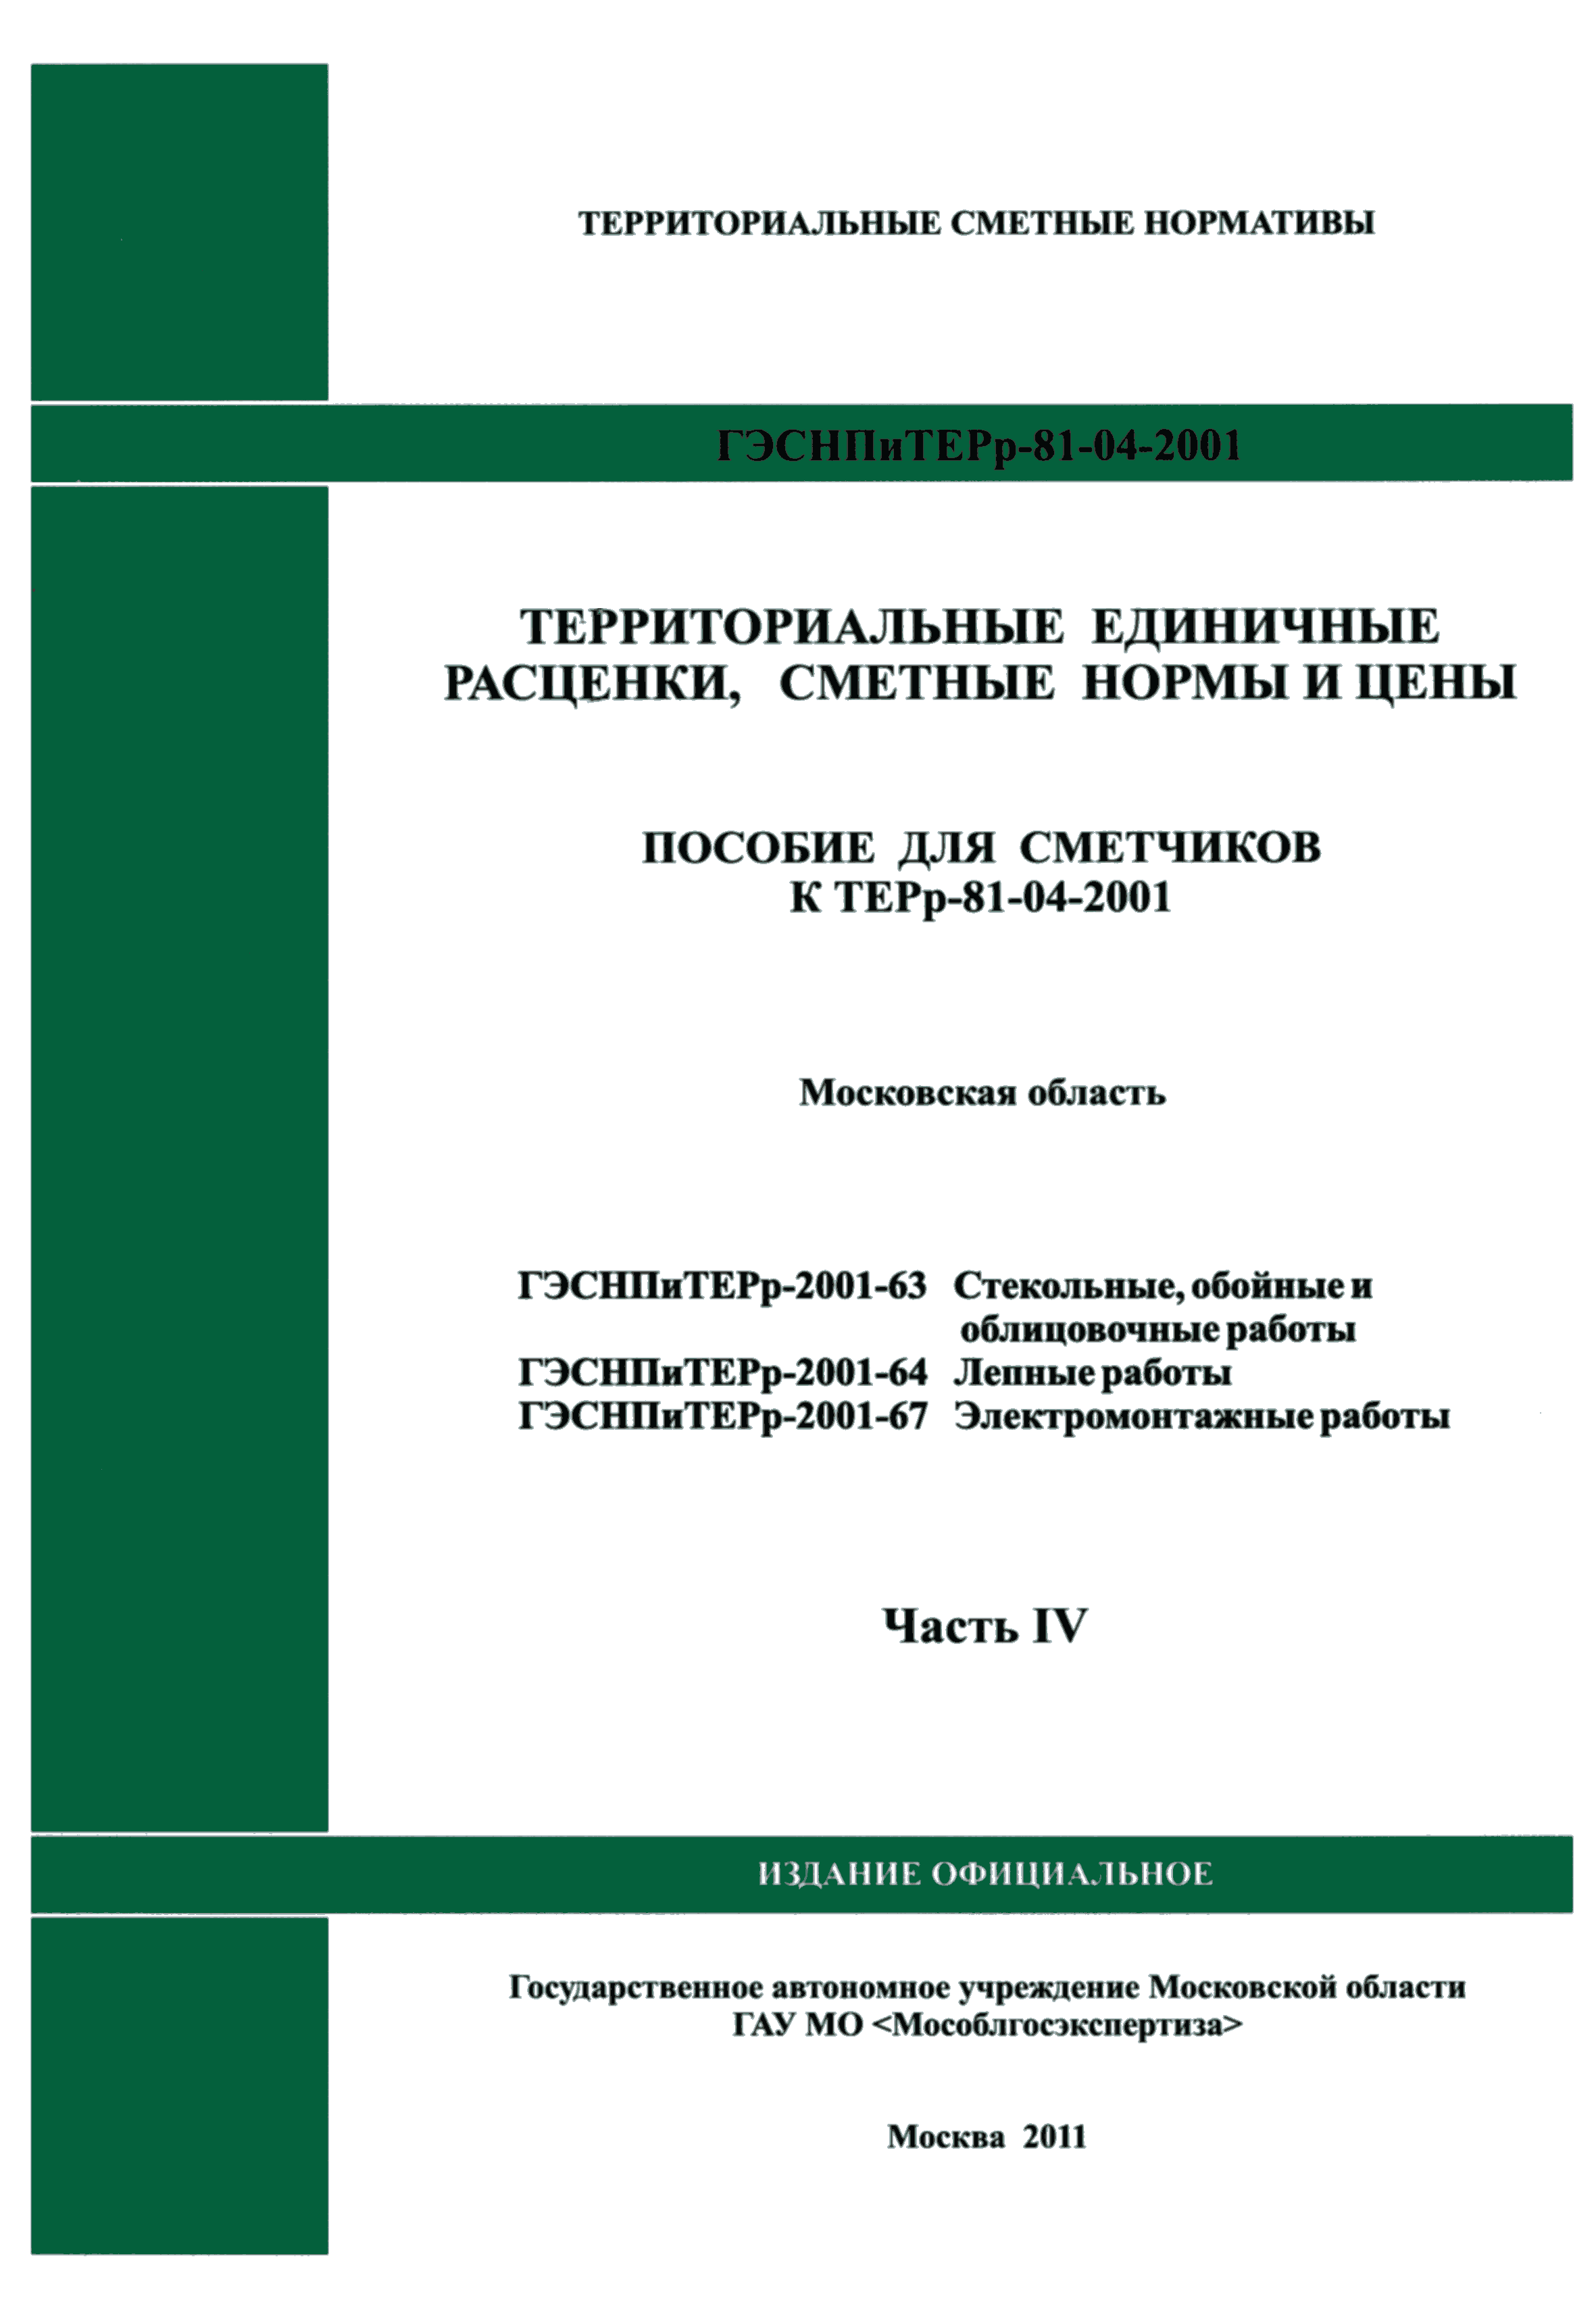 ГЭСНПиТЕРр 2001-63 Московской области